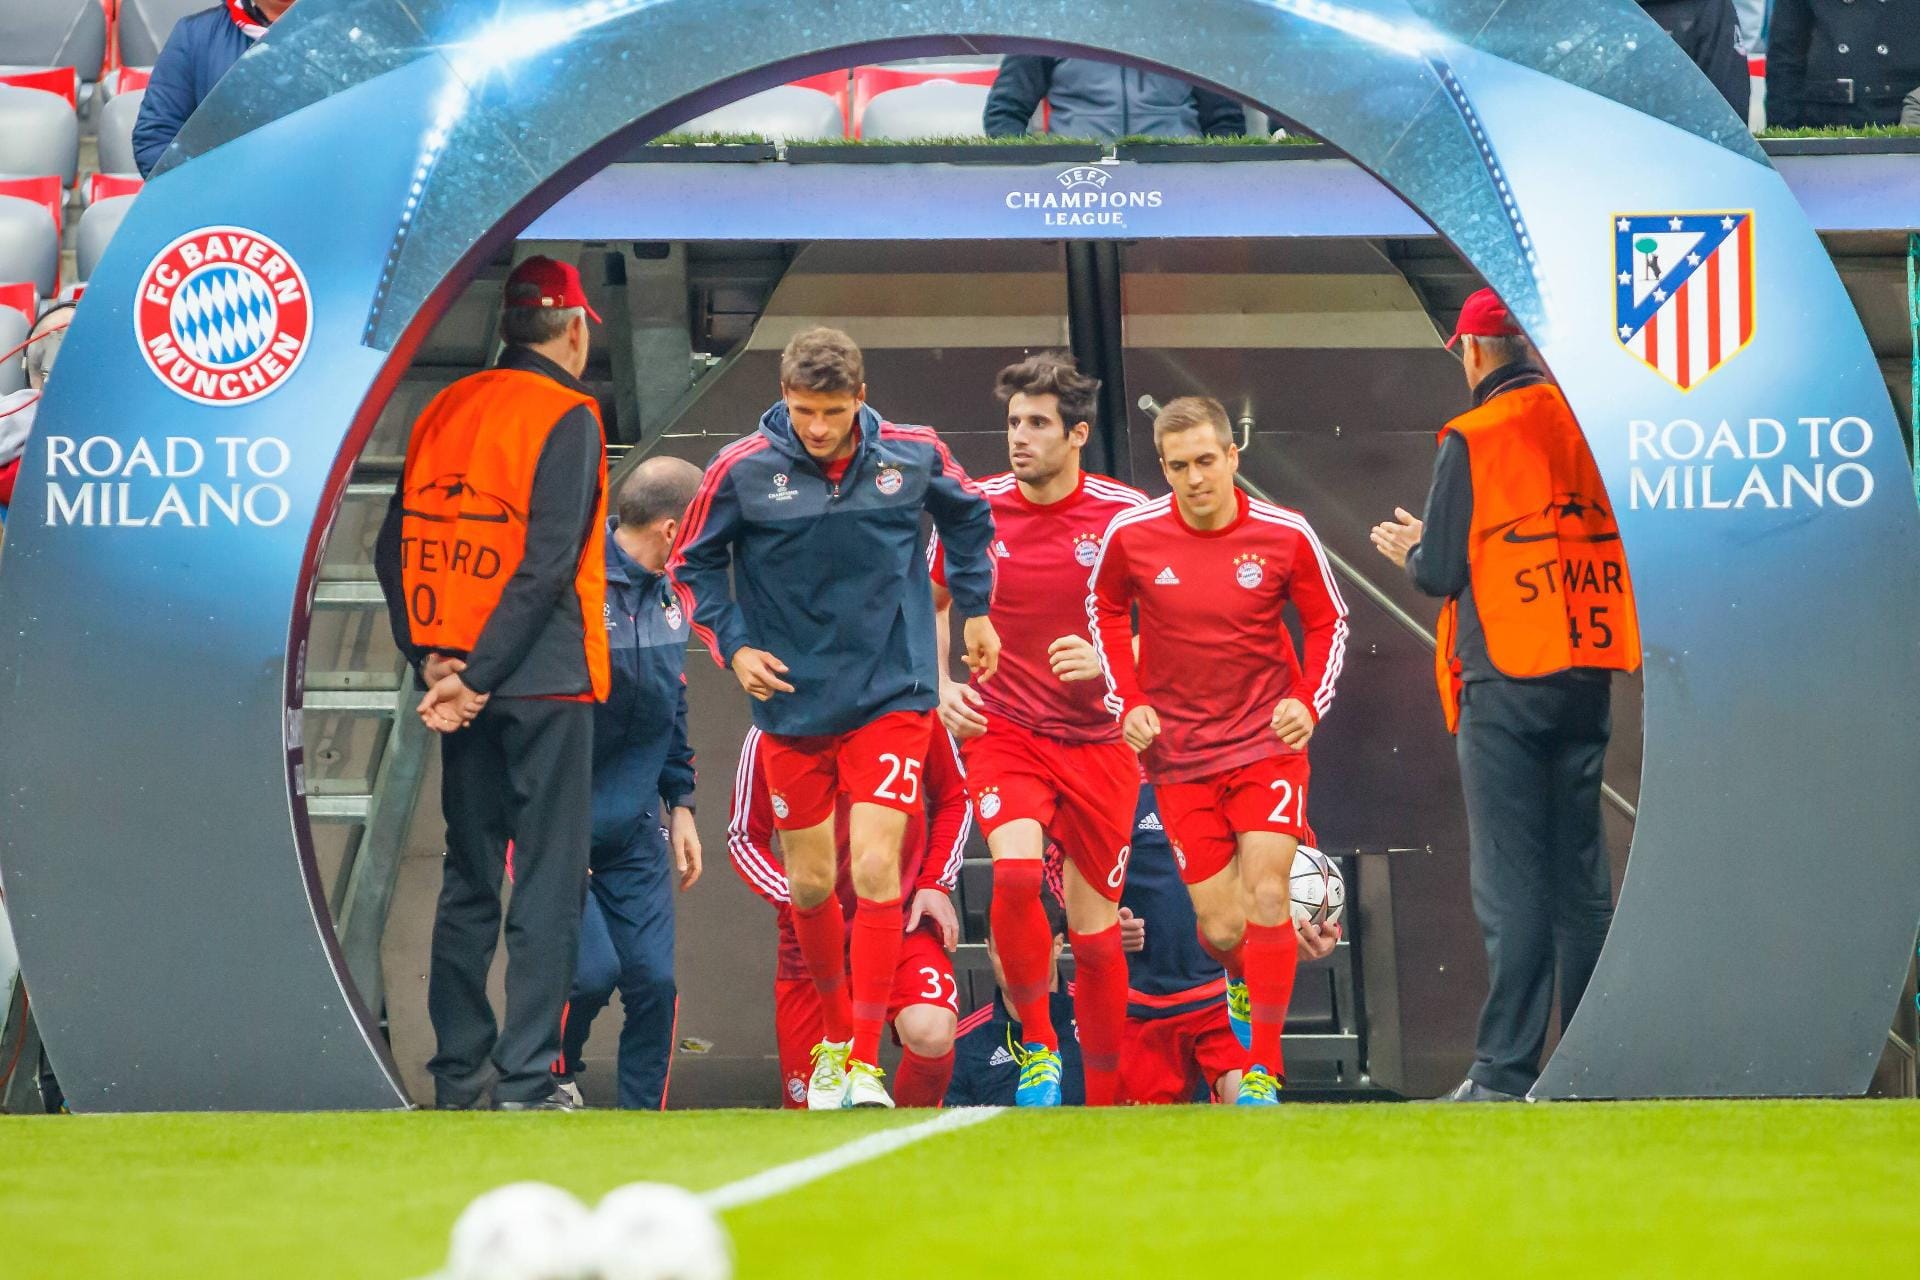 Führt der Weg der Bayern Richtung Mailand zum Endspiel oder endet er zum dritten Mal in Folge in München? Thomas Müller (re.), Philipp Lahm und Javi Martinez (li.) betreten die Arena zum Warmmachen.